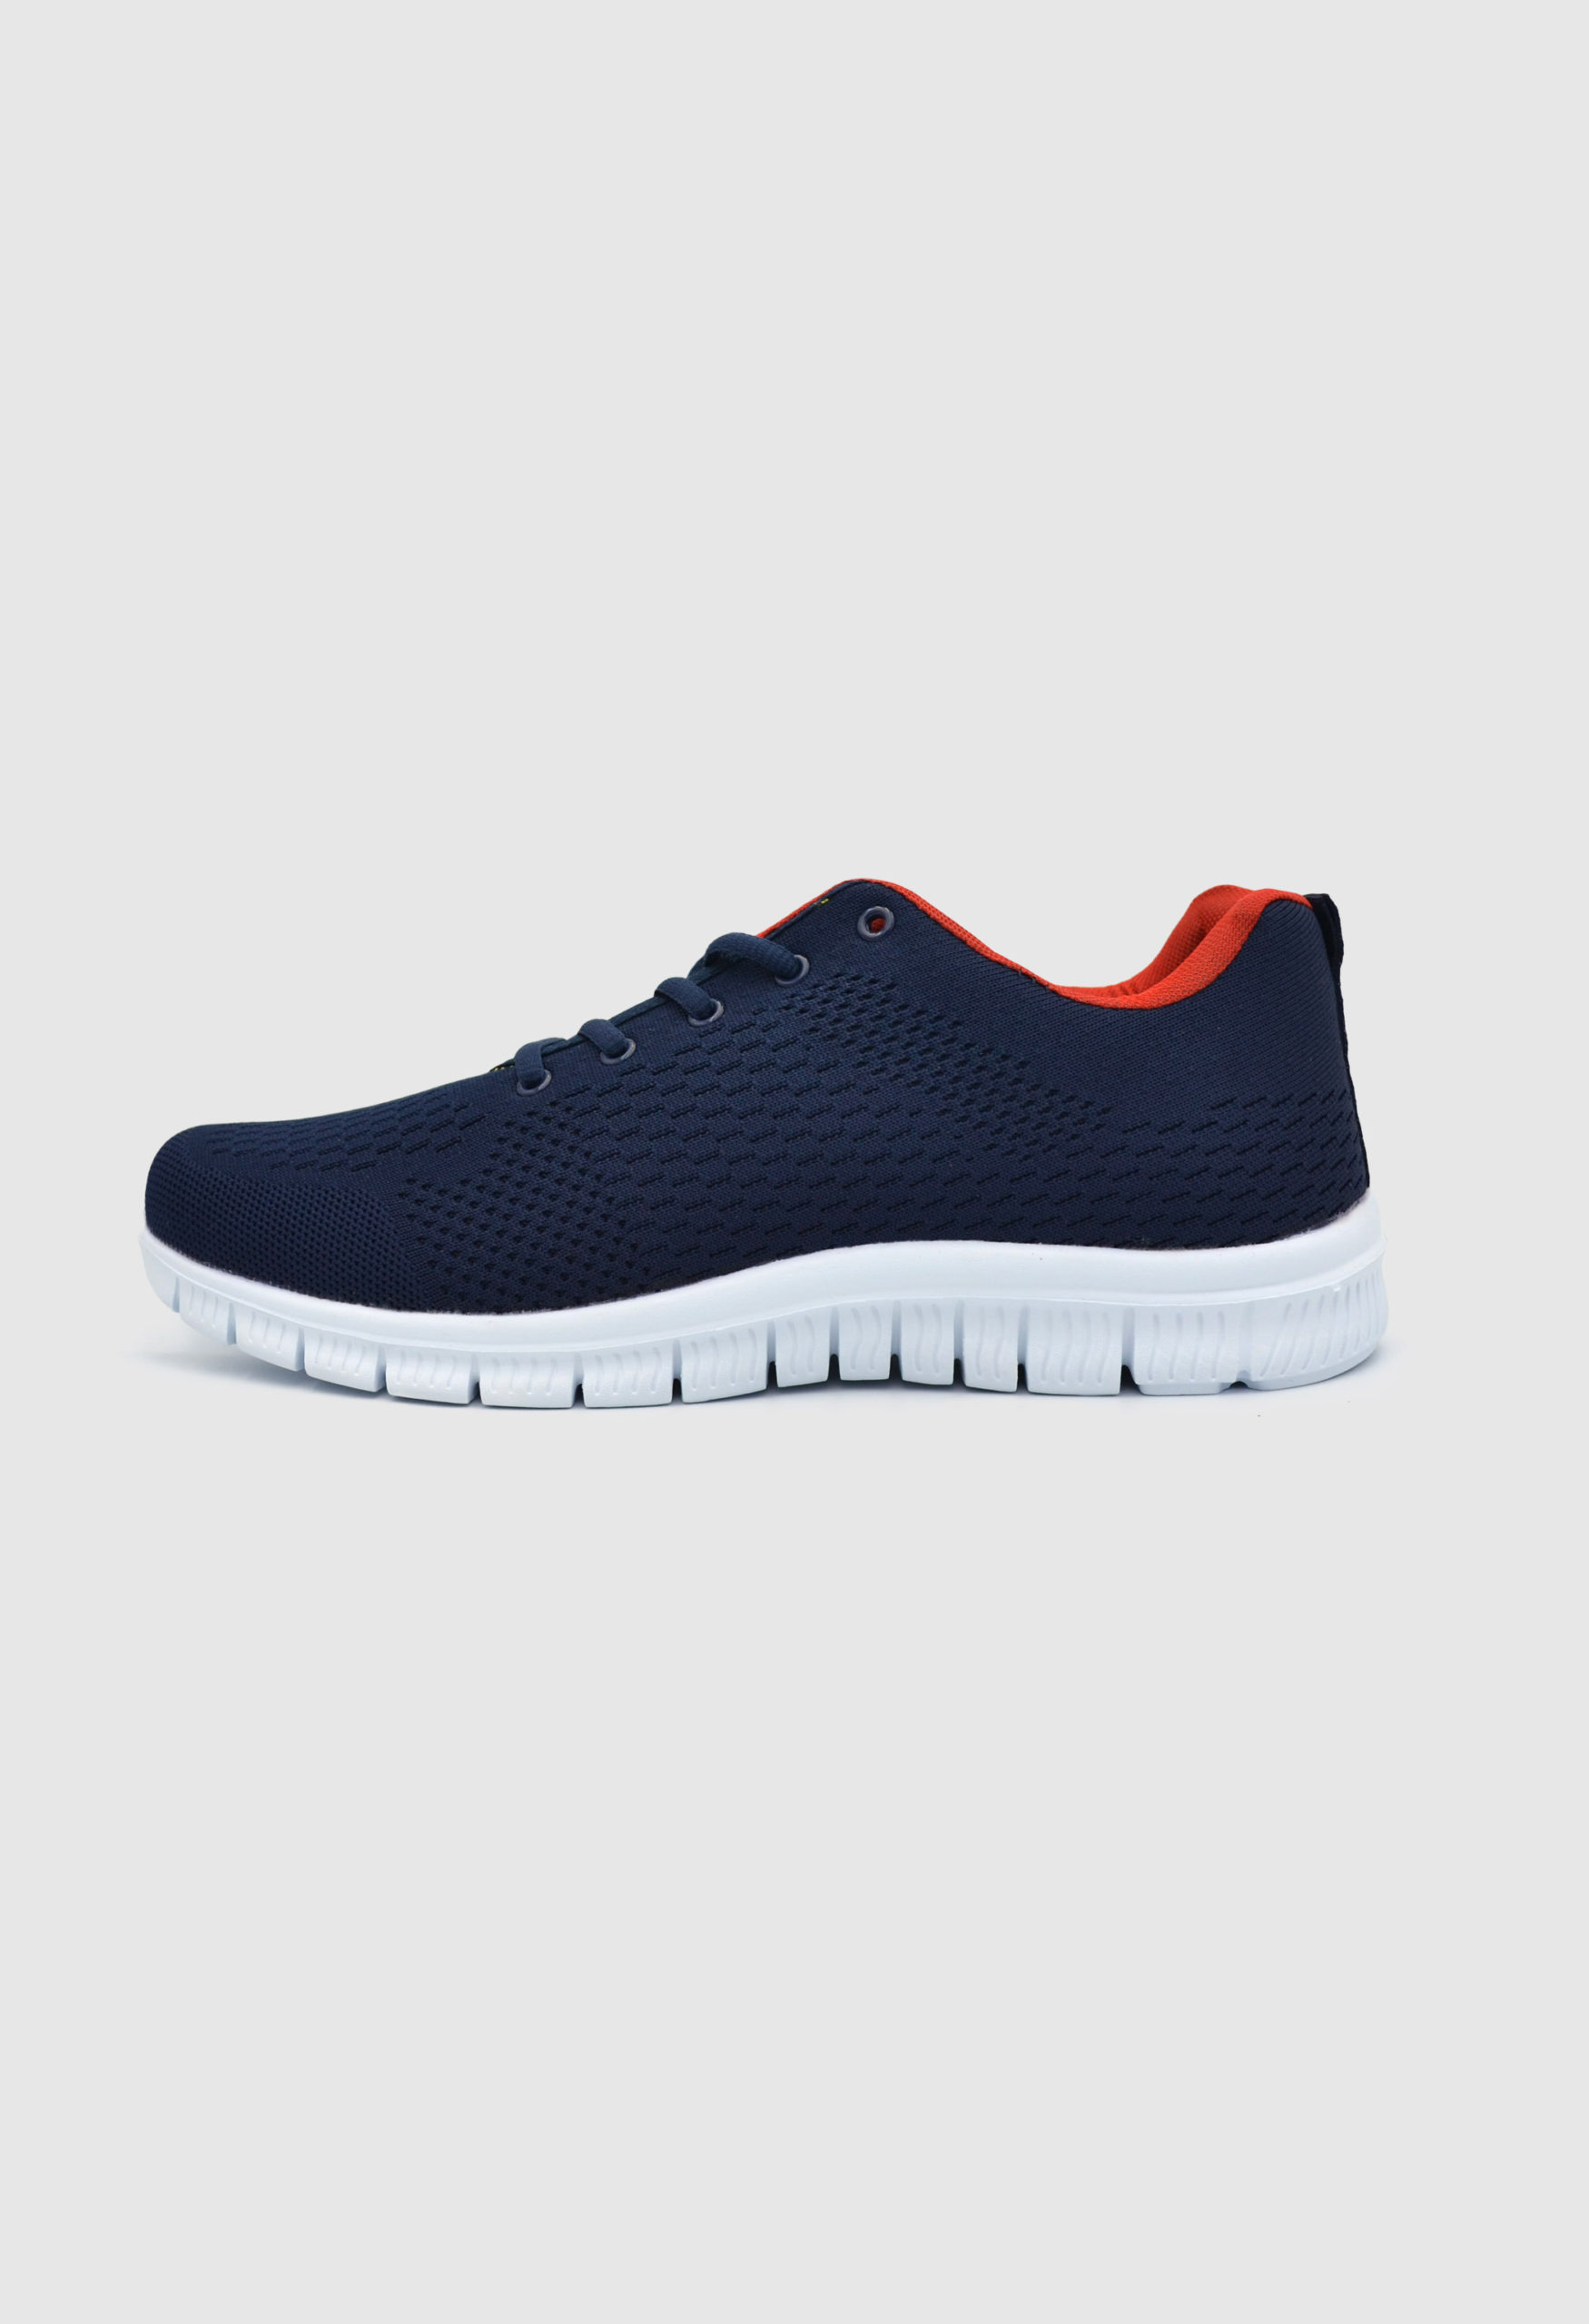 Ανδρικά Αθλητικά Παπούτσια για Τρέξιμο Navy Μπλε / 2321180 ΑΝΔΡΙΚΑ ΠΑΠΟΥΤΣΙΑ joya.gr